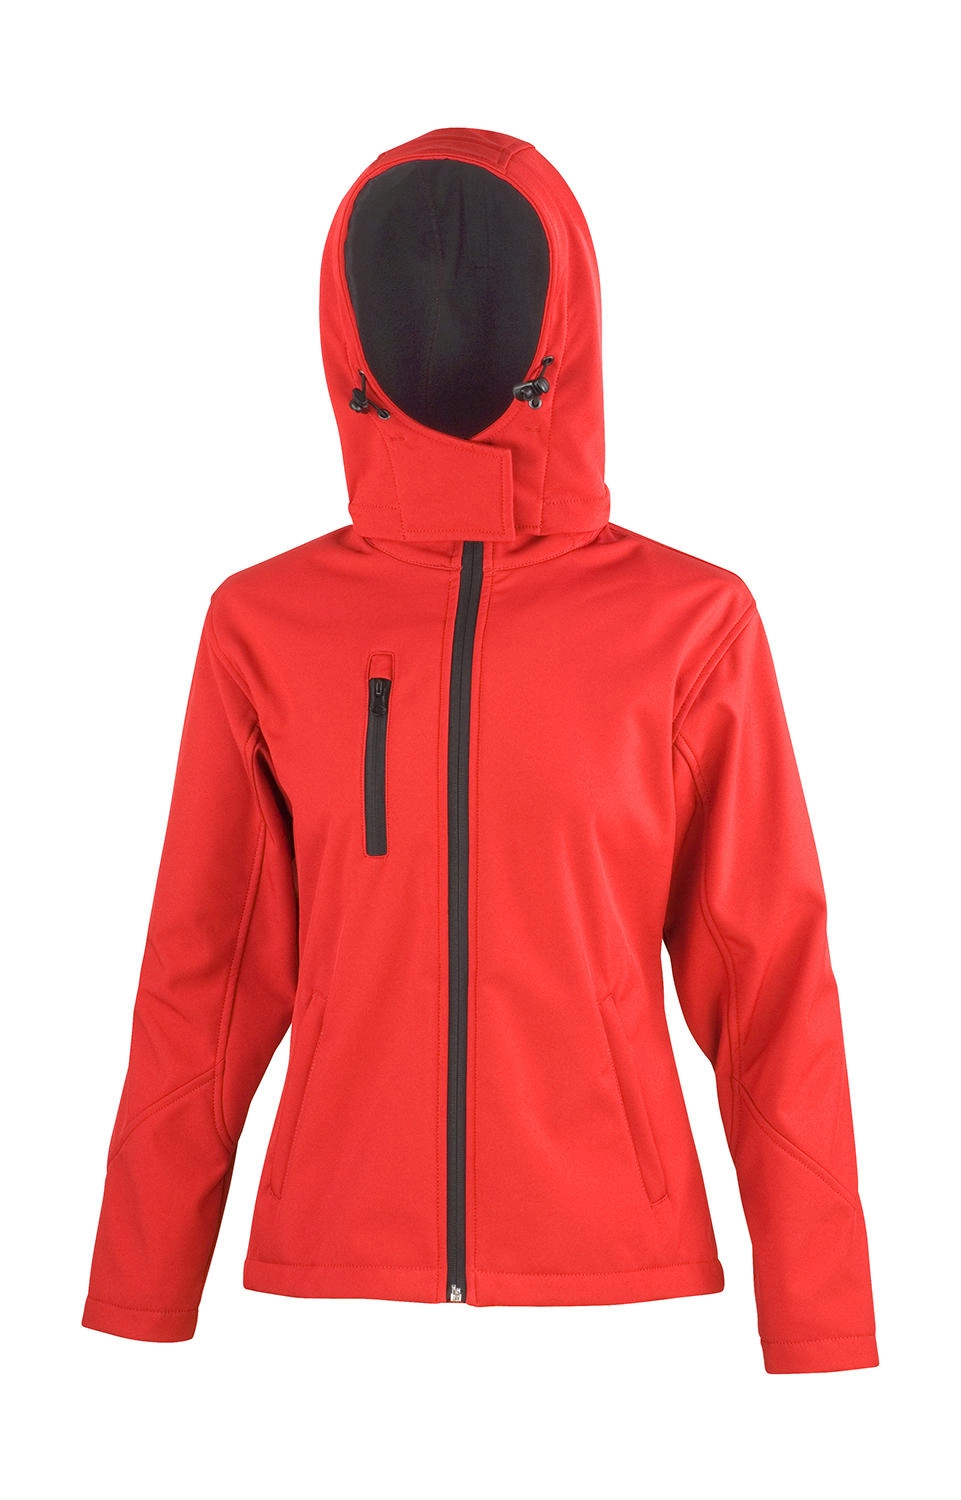 Ladies TX Performance Hooded Softshell Jacket zum Besticken und Bedrucken in der Farbe Red/Black mit Ihren Logo, Schriftzug oder Motiv.